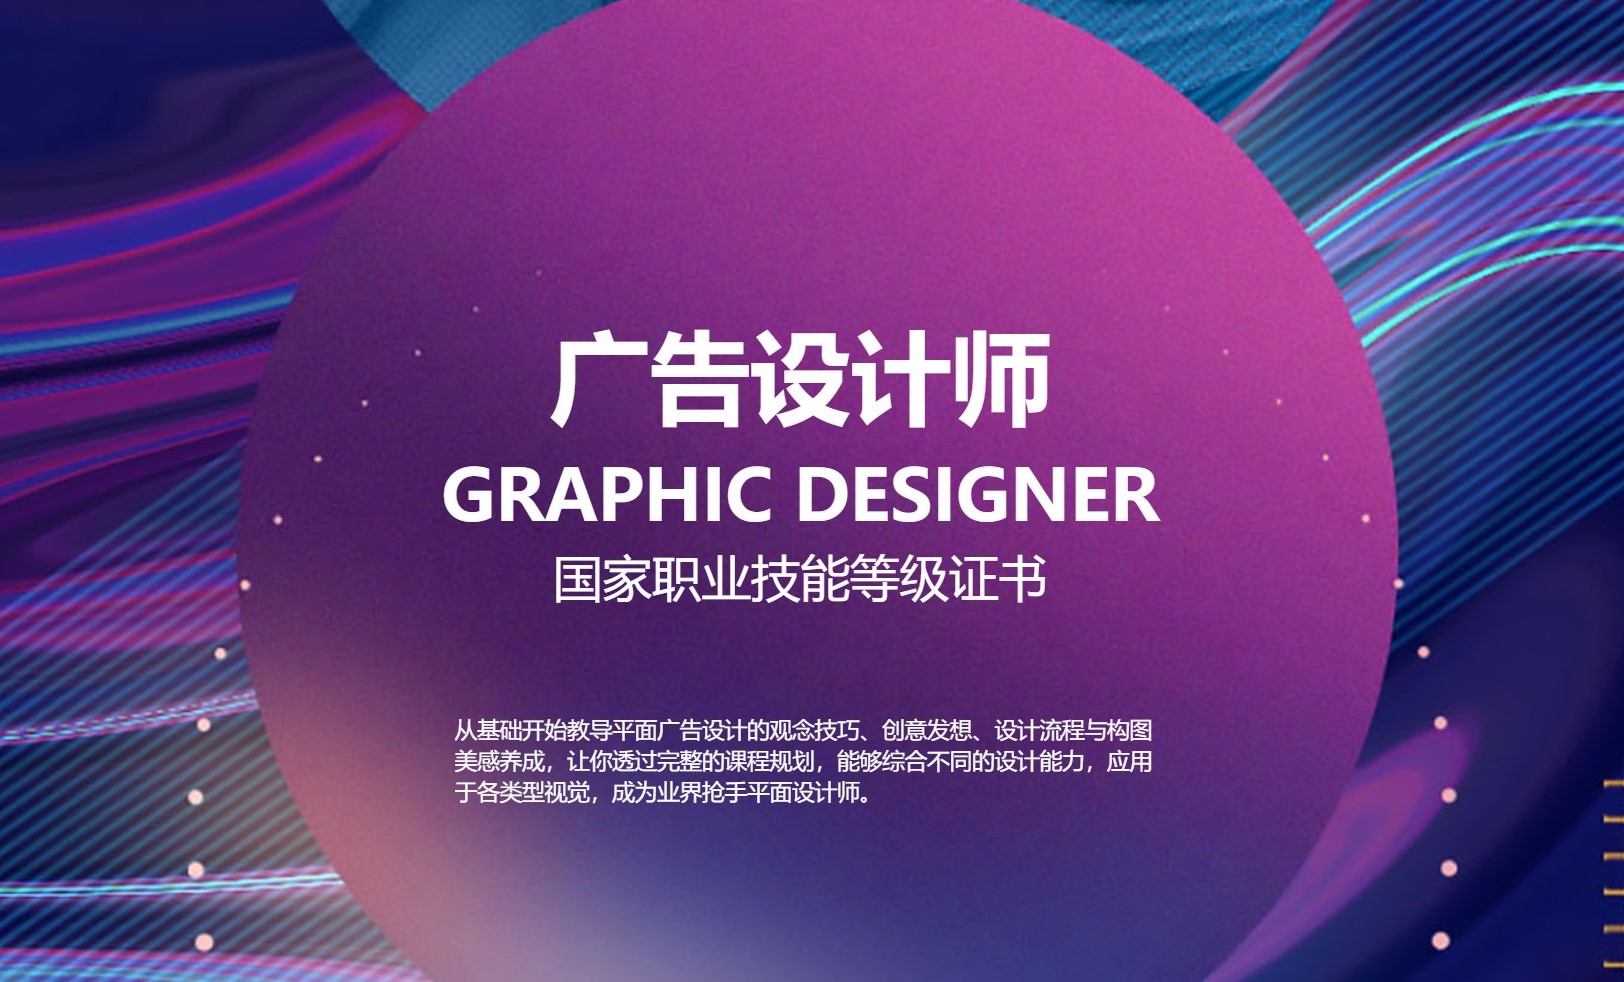 上海五加一培训 广告设计师职业技能等级培训 政府补贴图片